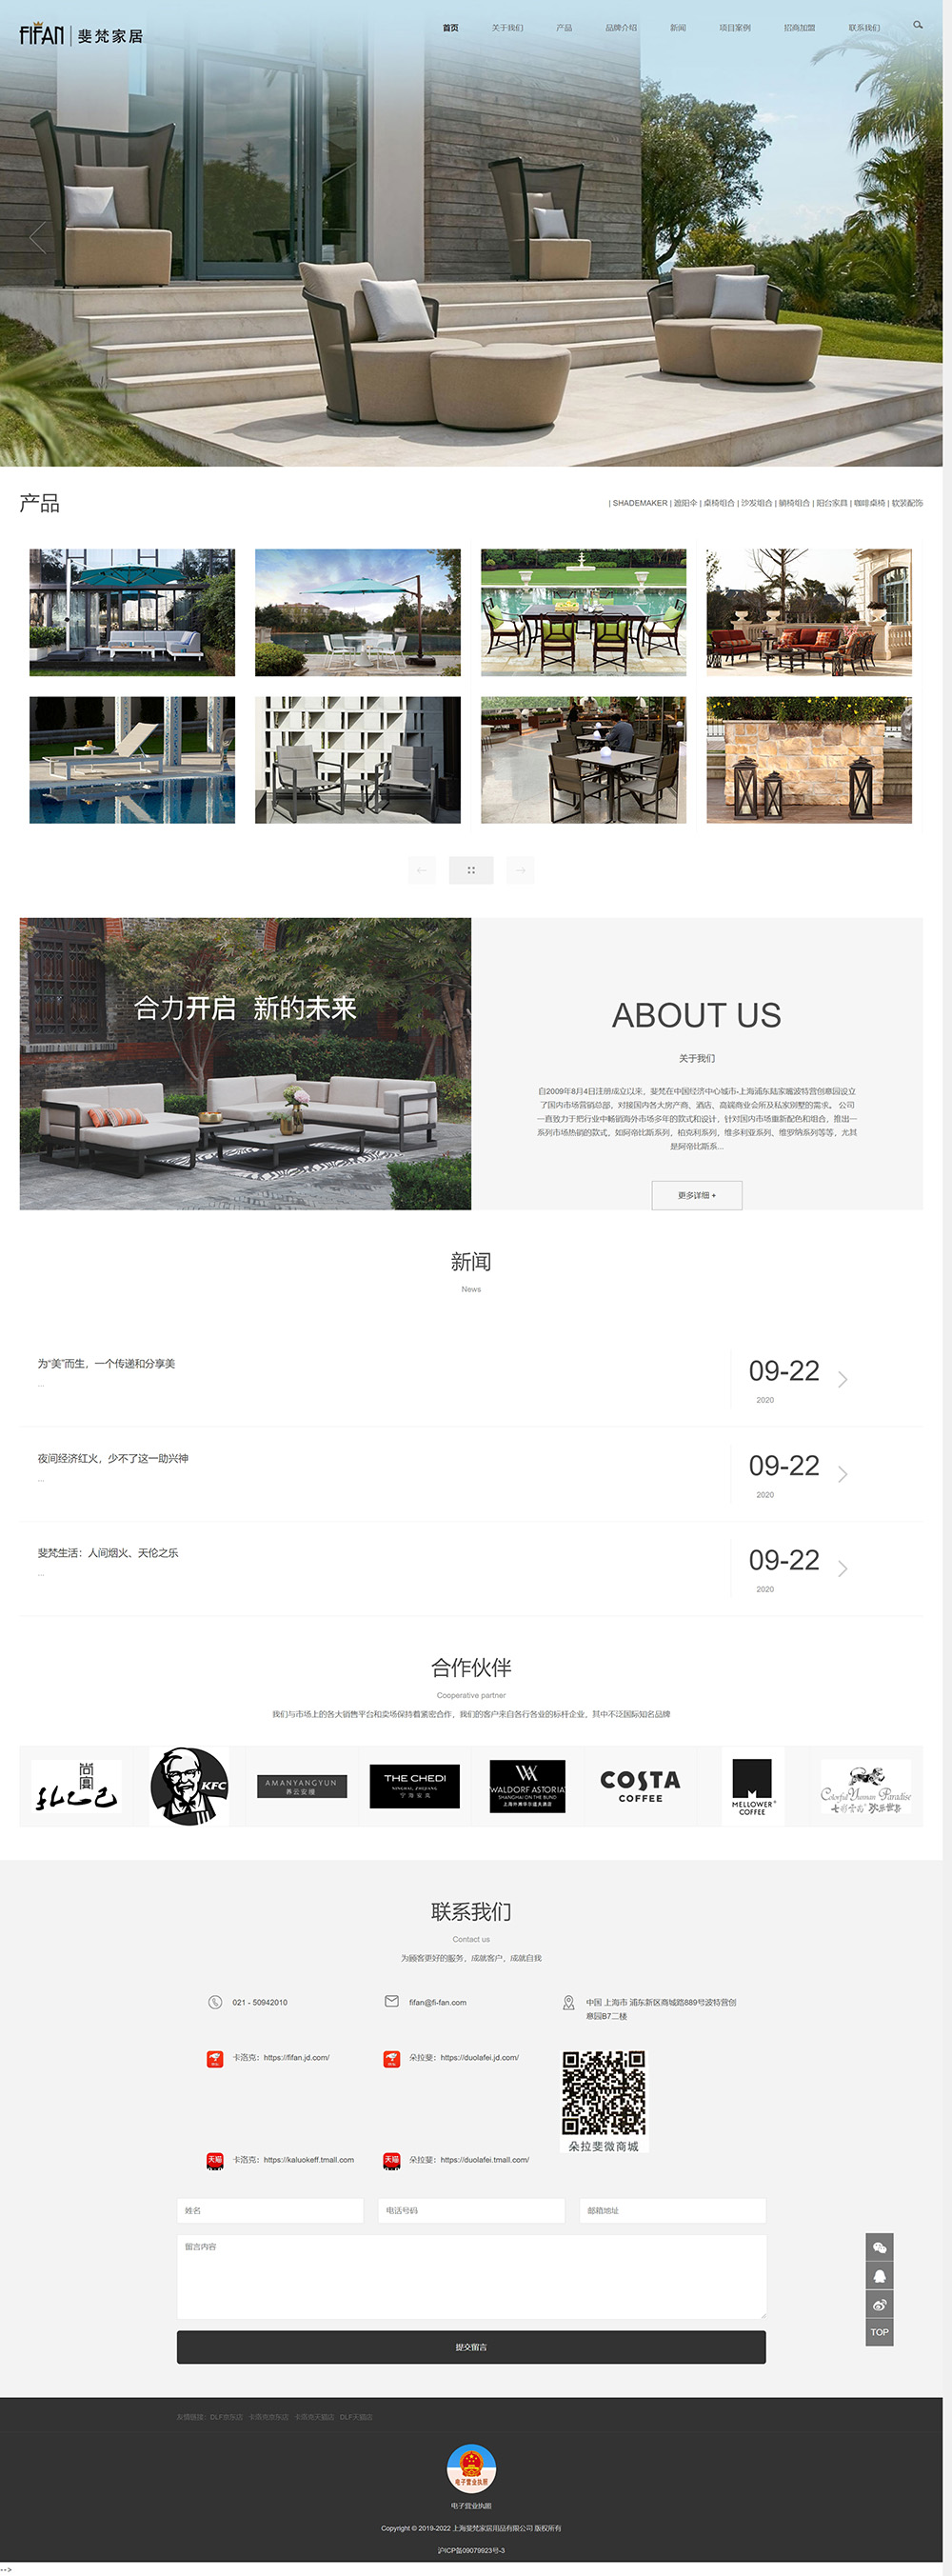 上海斐梵家居用品有限公司网站案例